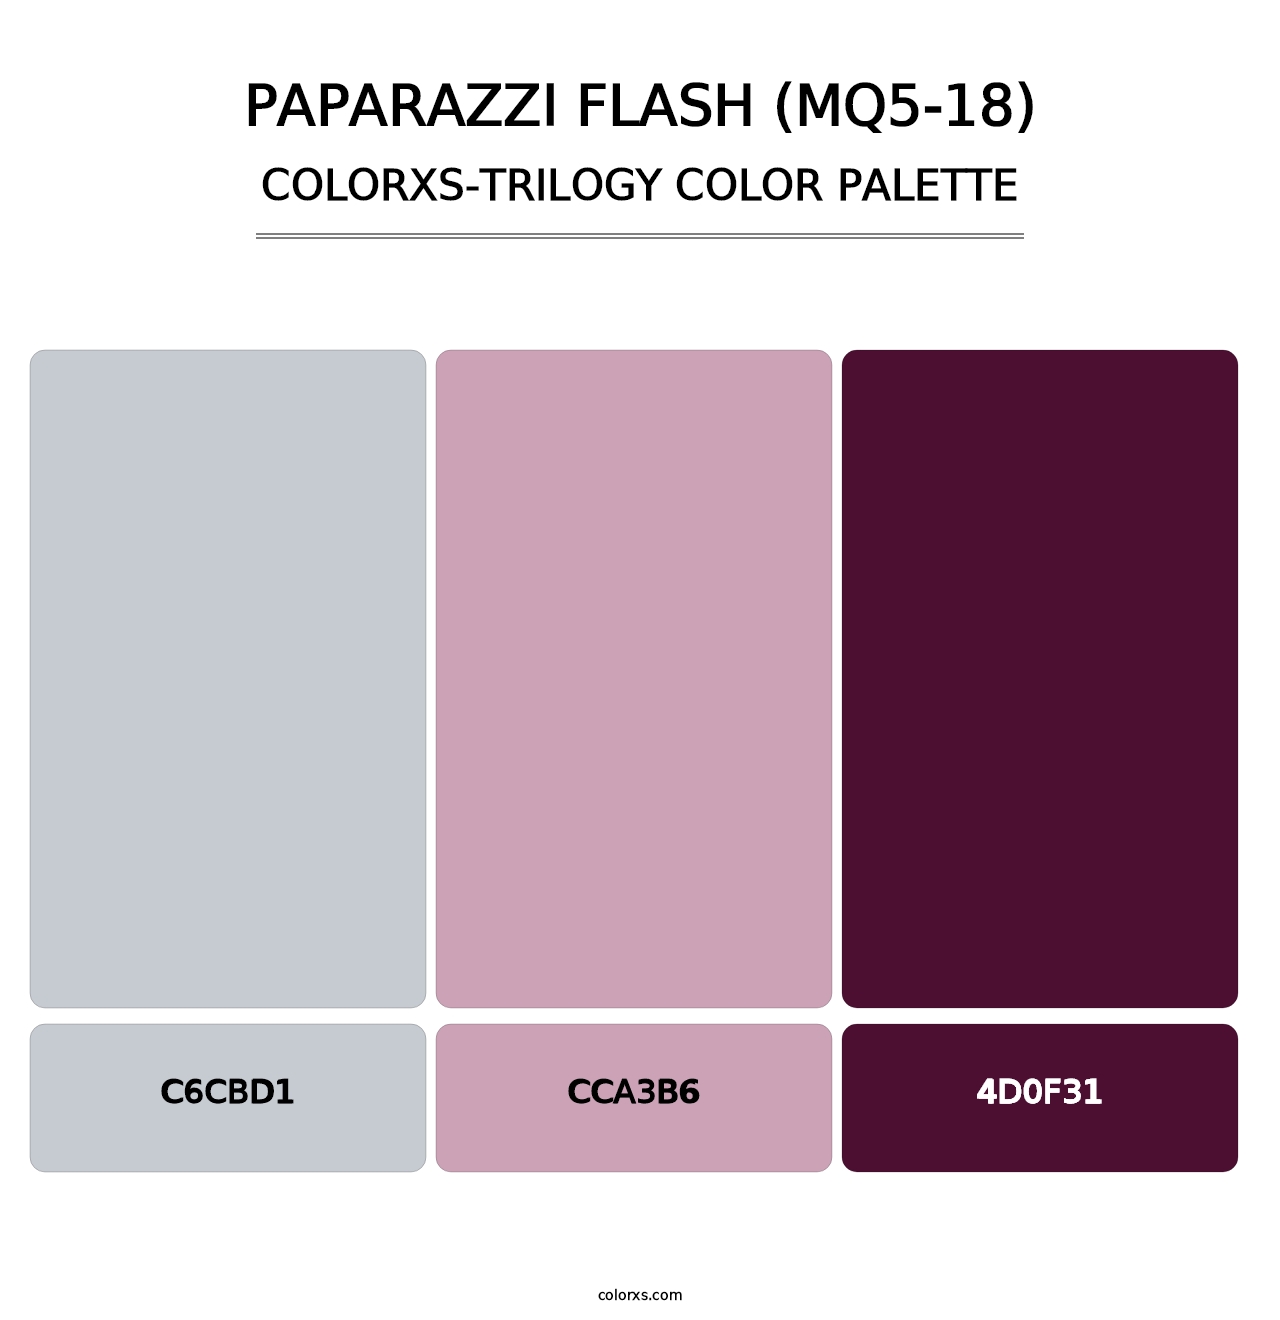 Paparazzi Flash (MQ5-18) - Colorxs Trilogy Palette